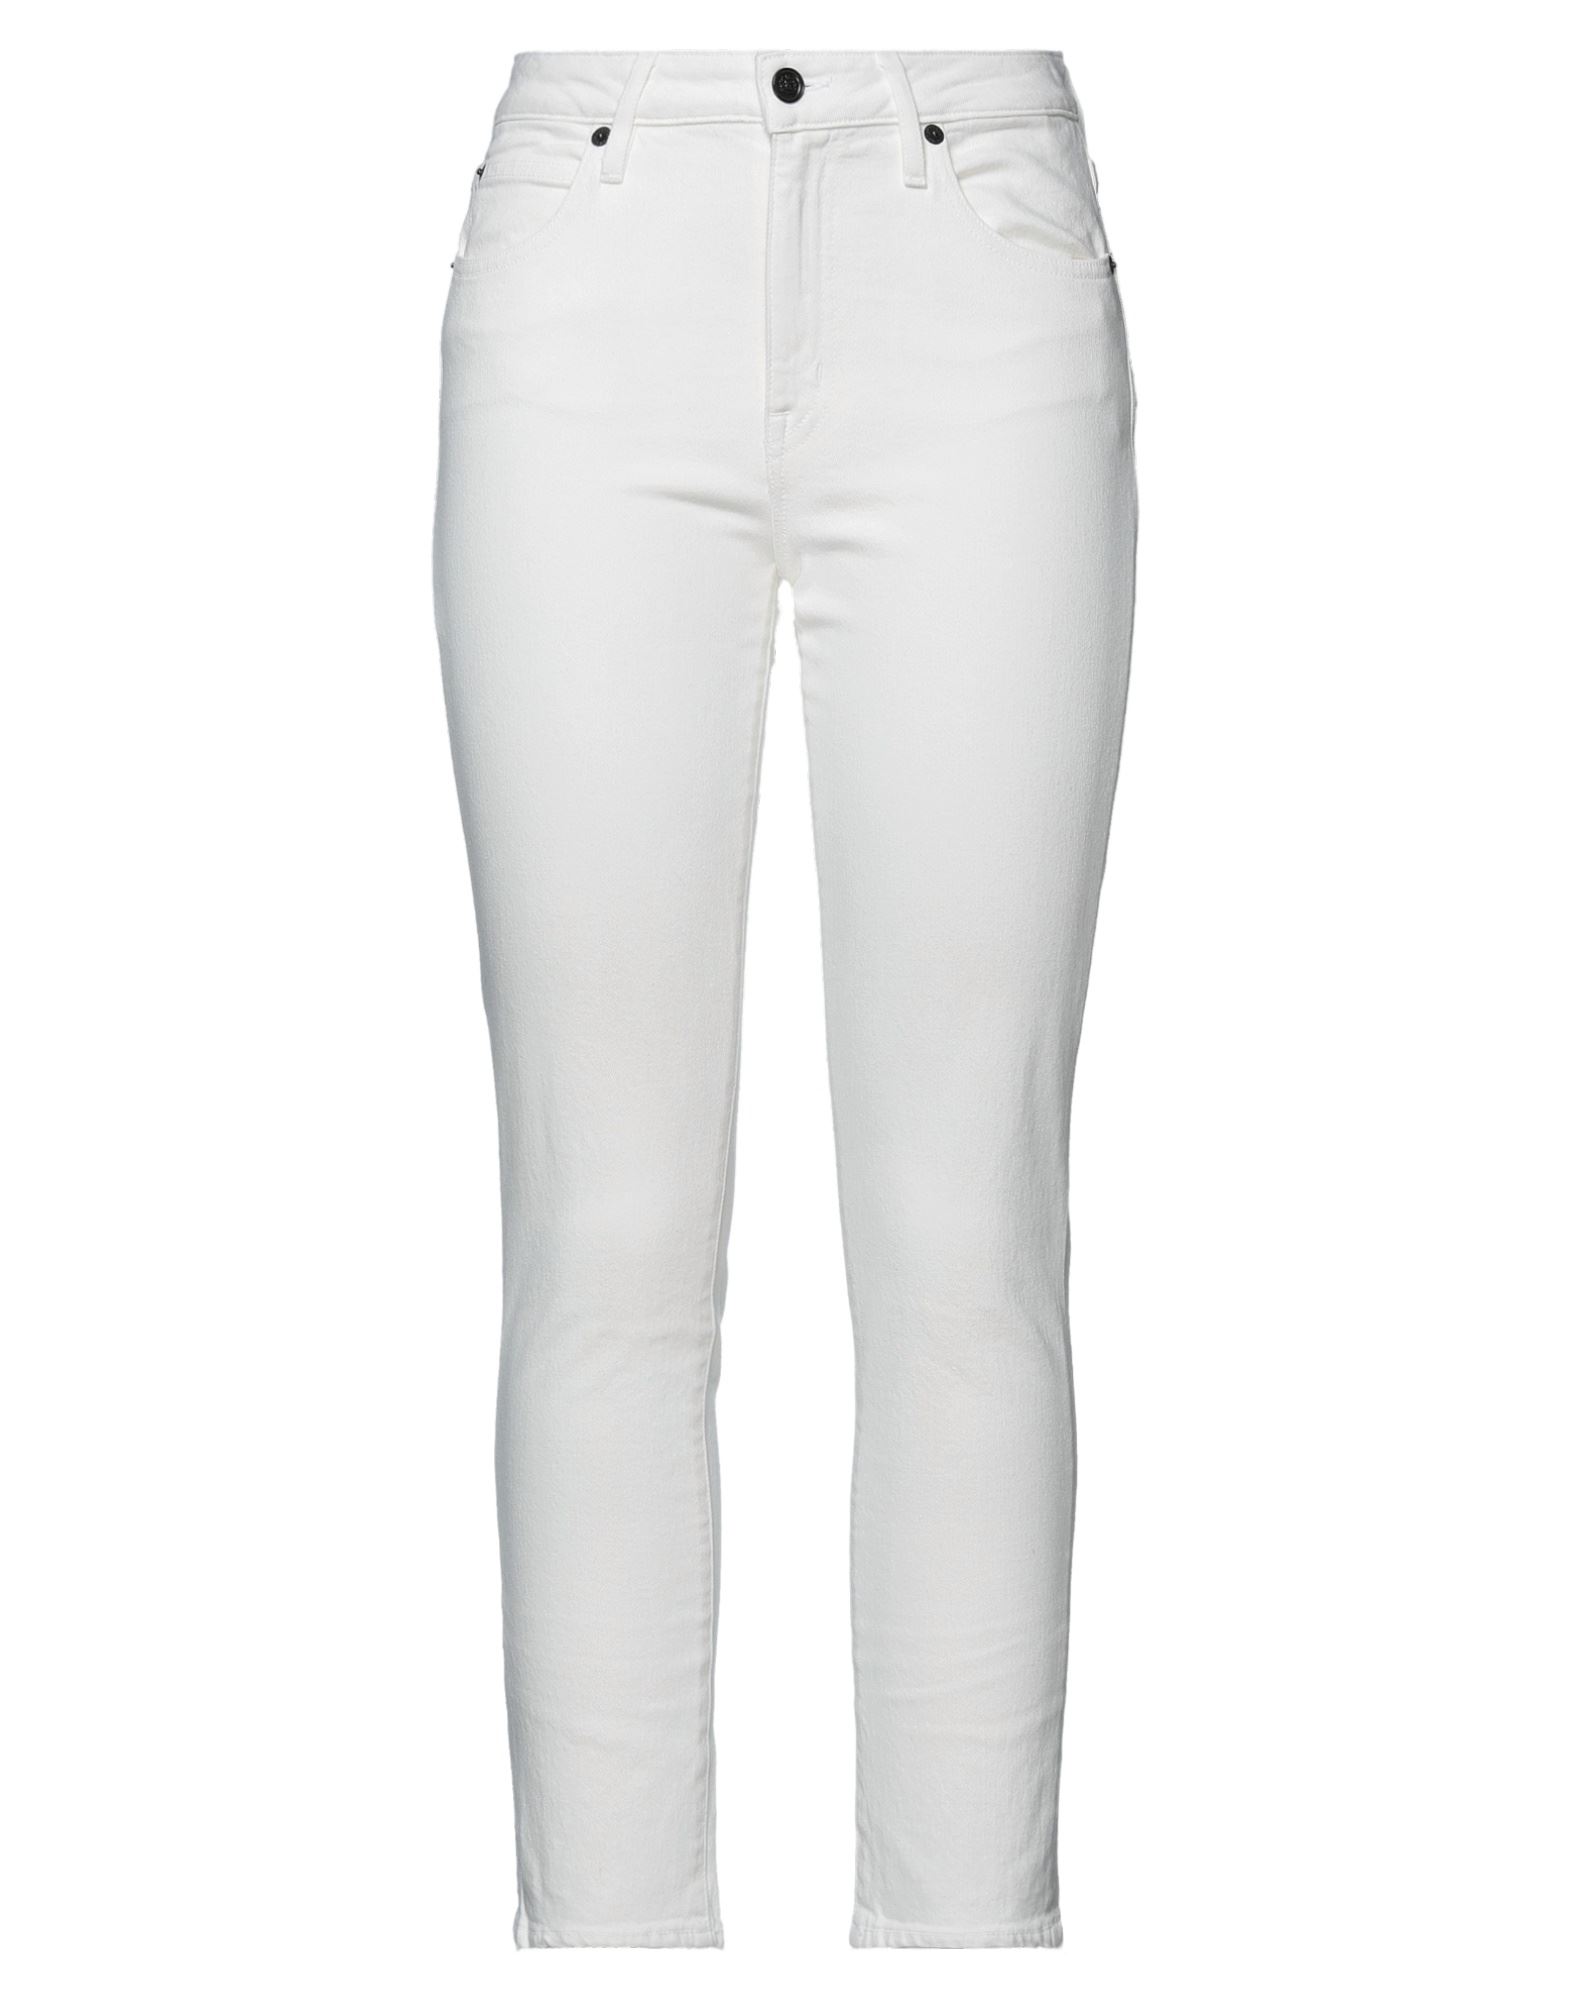 Shop Slvrlake Woman Jeans White Size 28 Cotton, Elastane